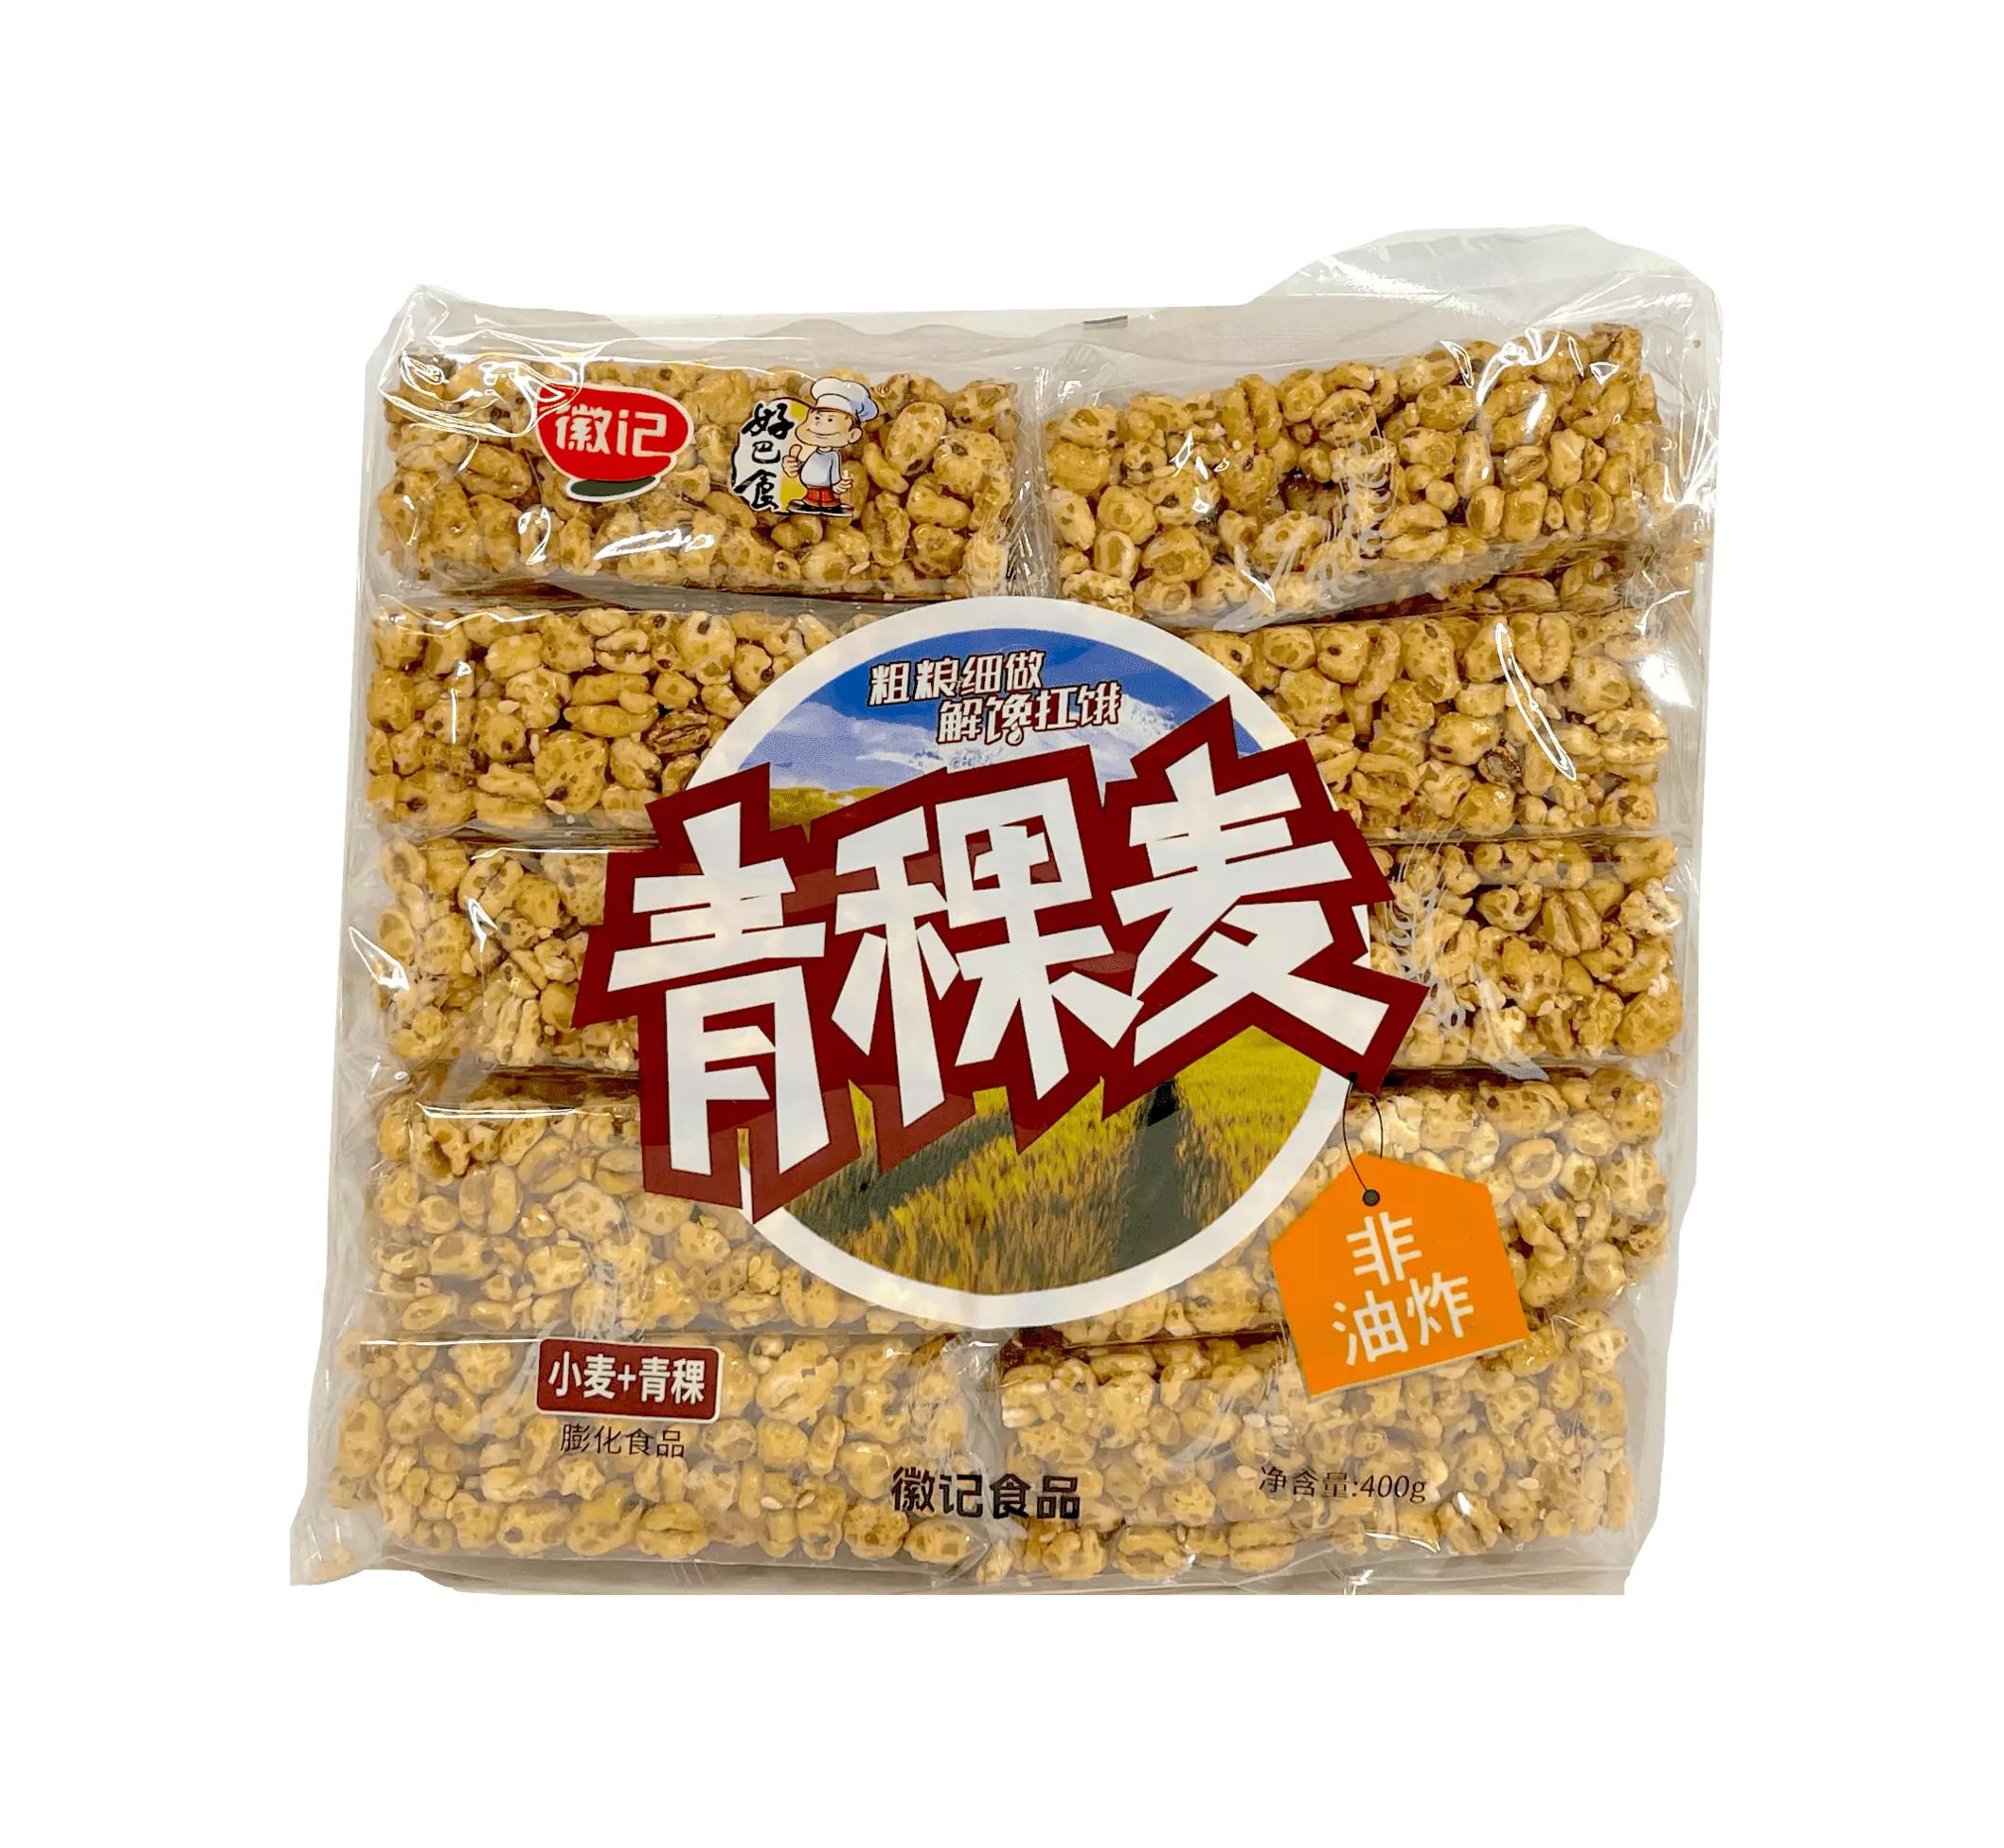 Highland Barley Snack Bar 400g HBS China